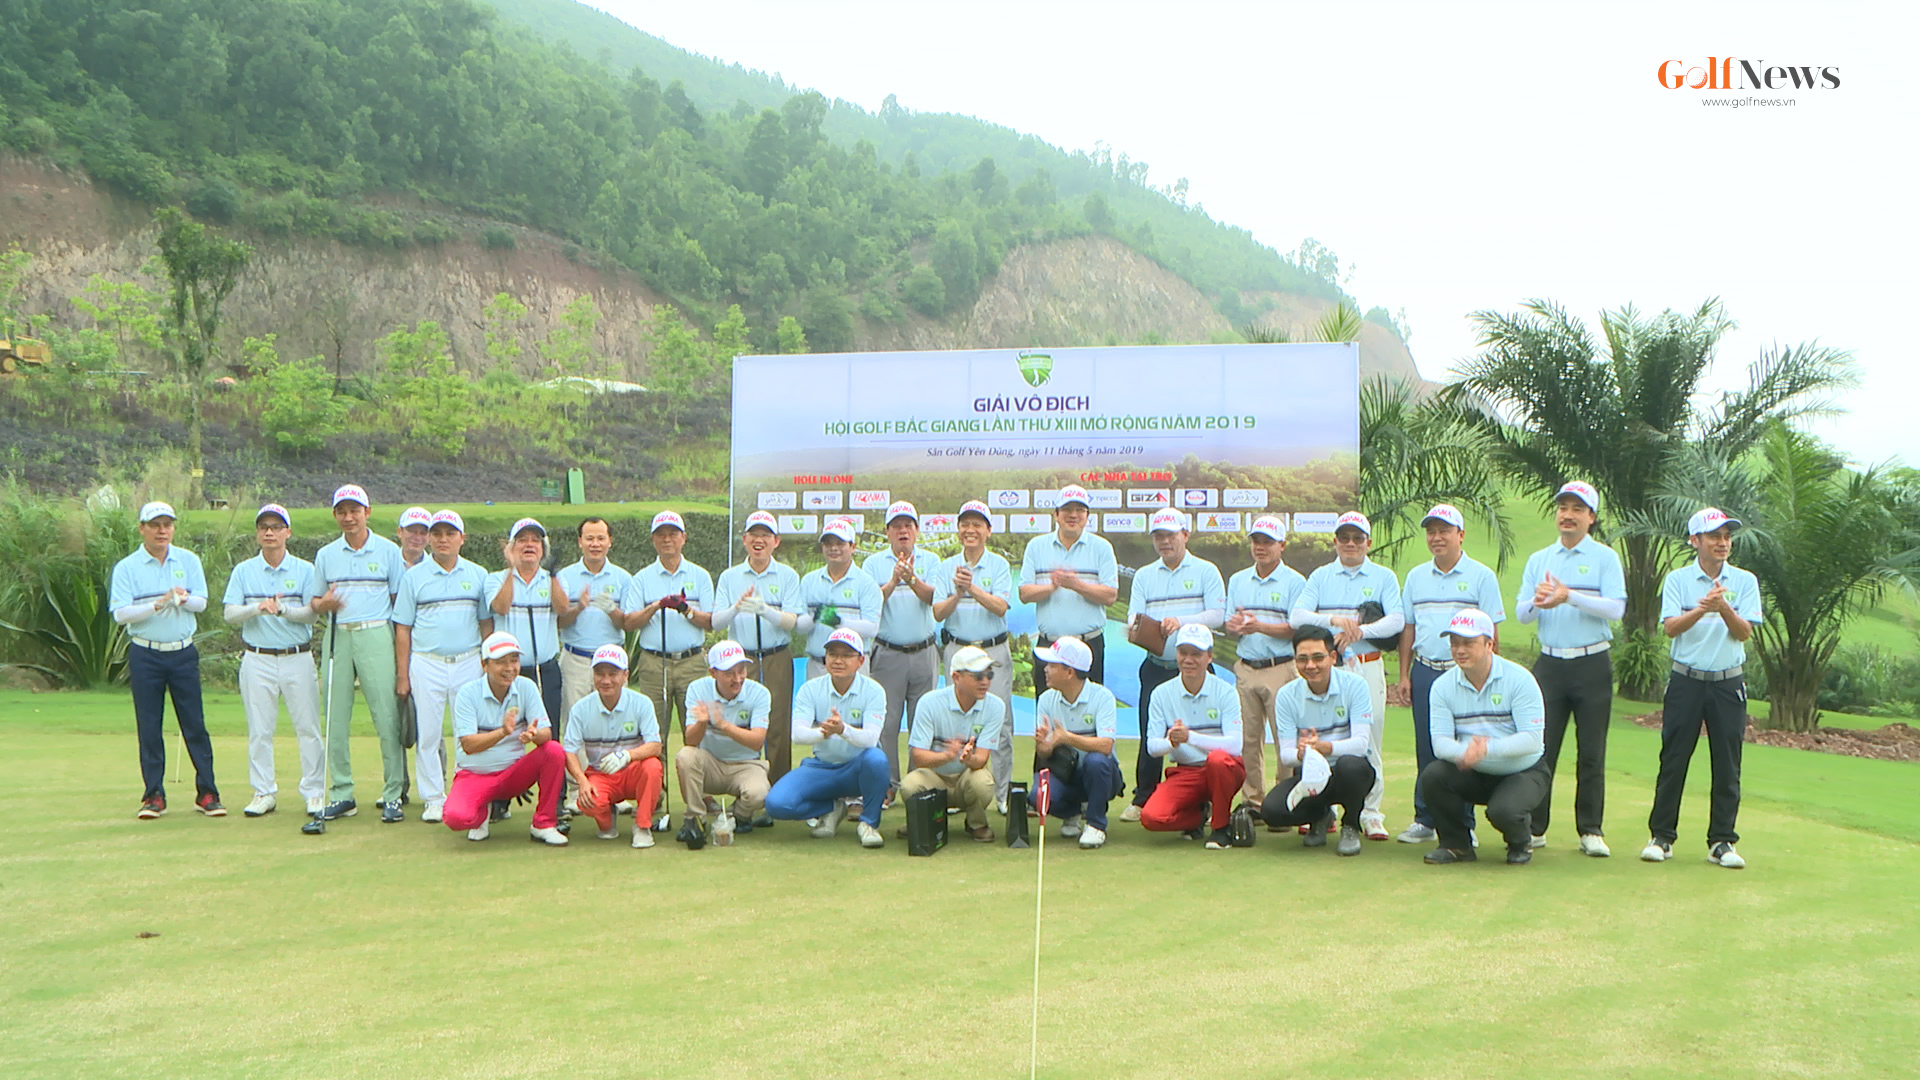 Khởi tranh Giải vô địch Hội golf Bắc Giang lần thứ XIII